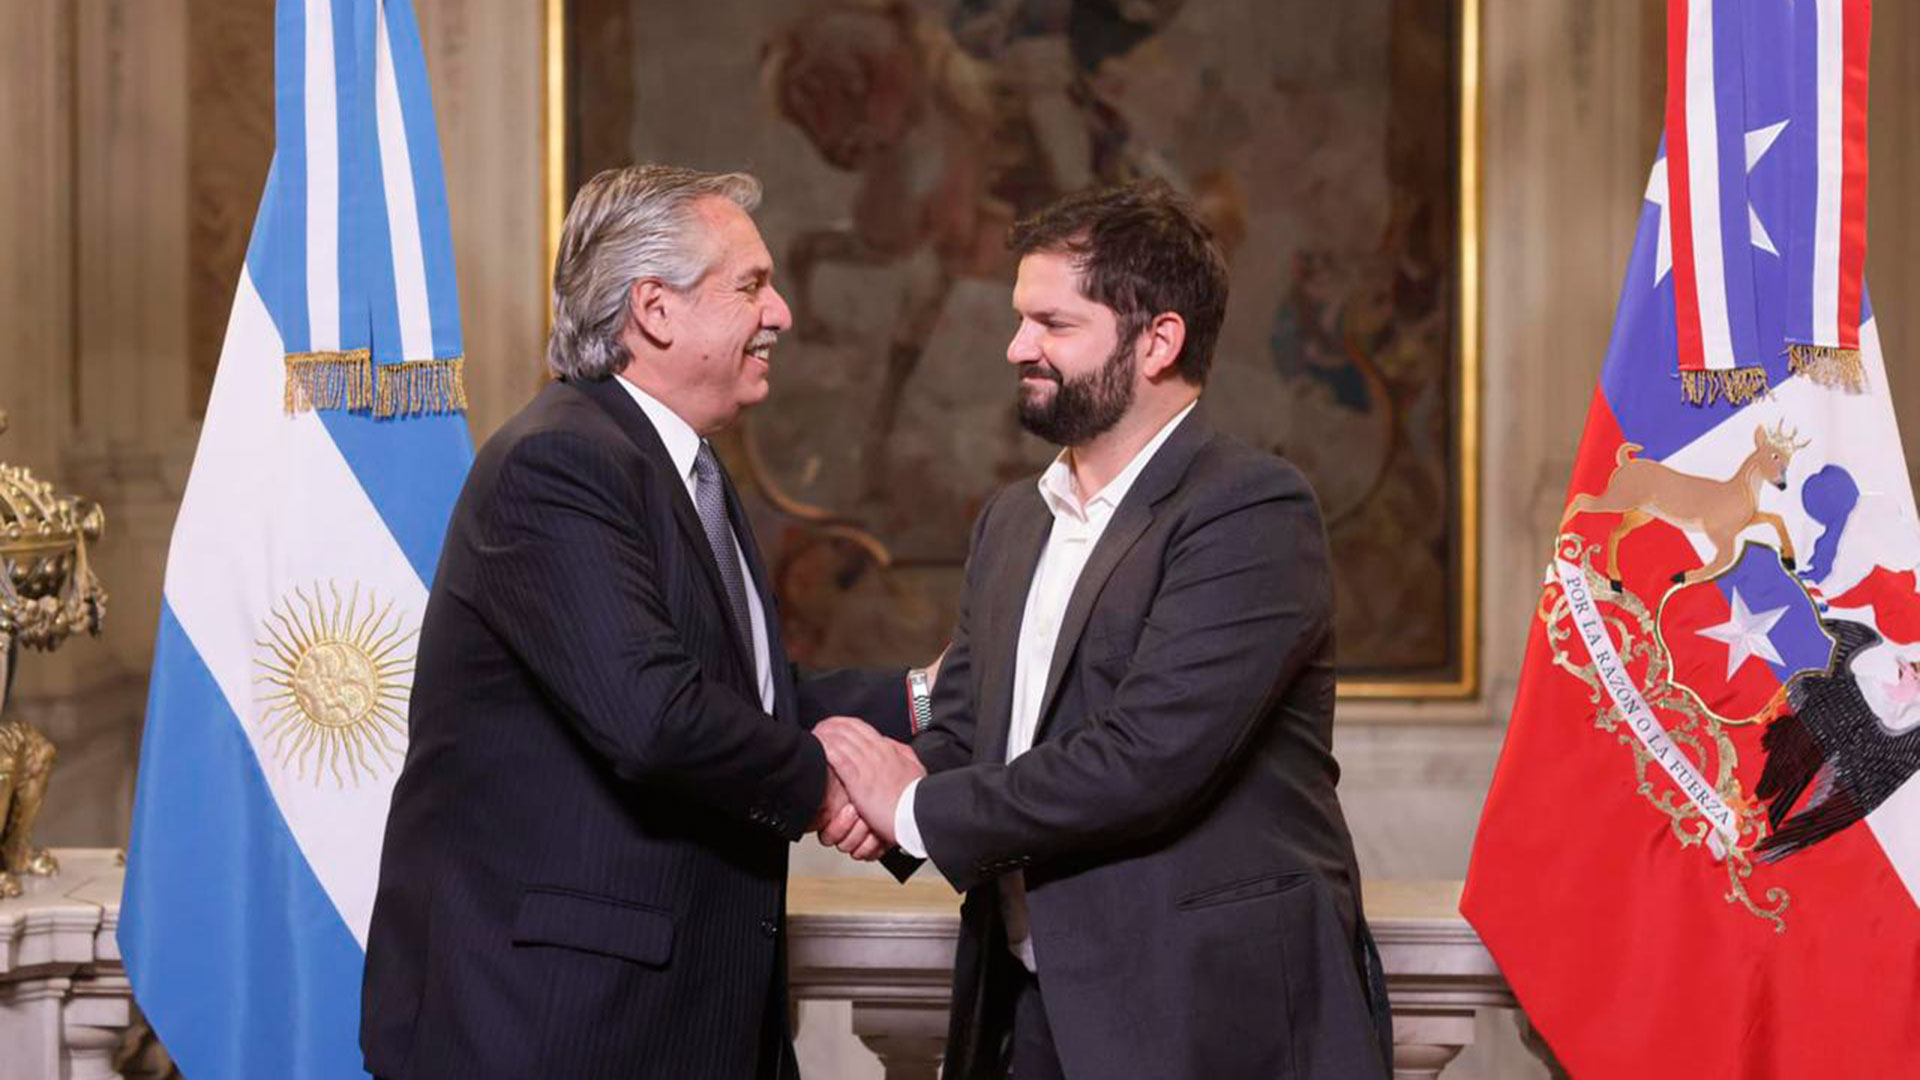 Alberto Fernández recibió hoy al presidente chileno Gabriel Boric en la Casa Rosada. Ambos mandatarios posaron para la tradicional foto oficial en la escalera Francia de Casa de Gobierno